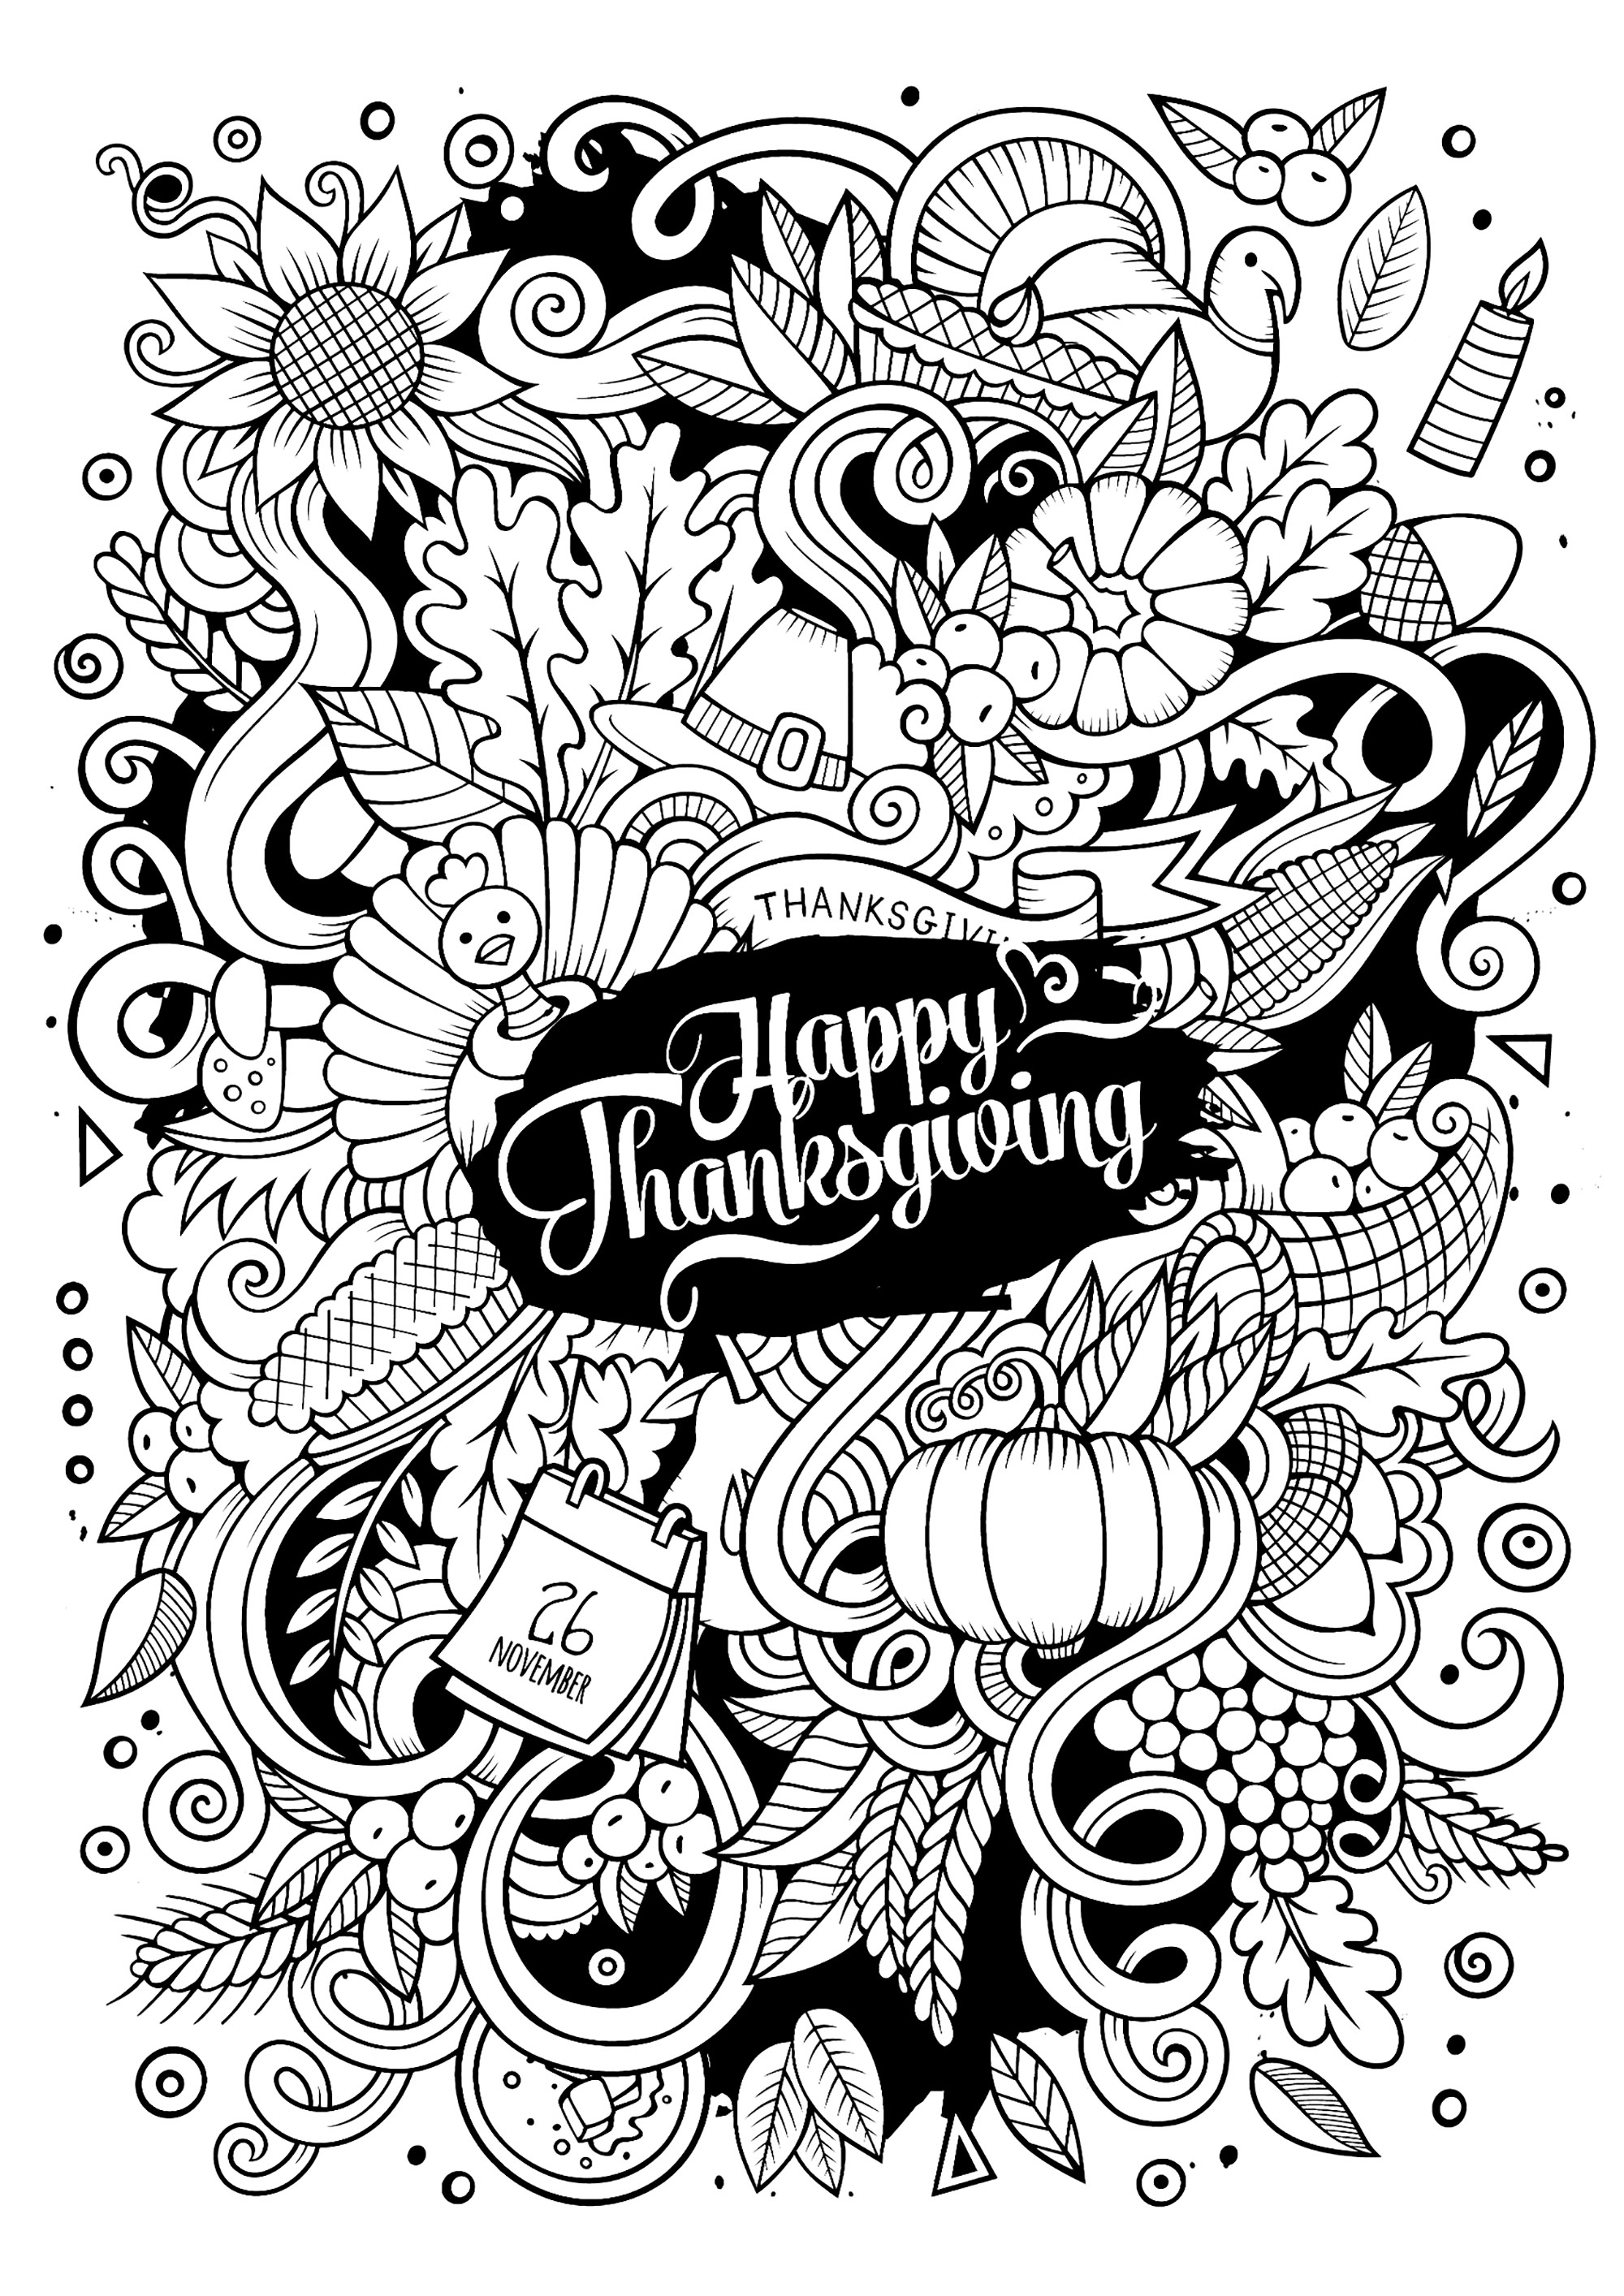 Uma página para colorir estilo 'Doodle' para o Dia de Ação de Graças. Muitos motivos bonitos de outono e de Ação de Graças para colorir, numa variedade de cores vivas.